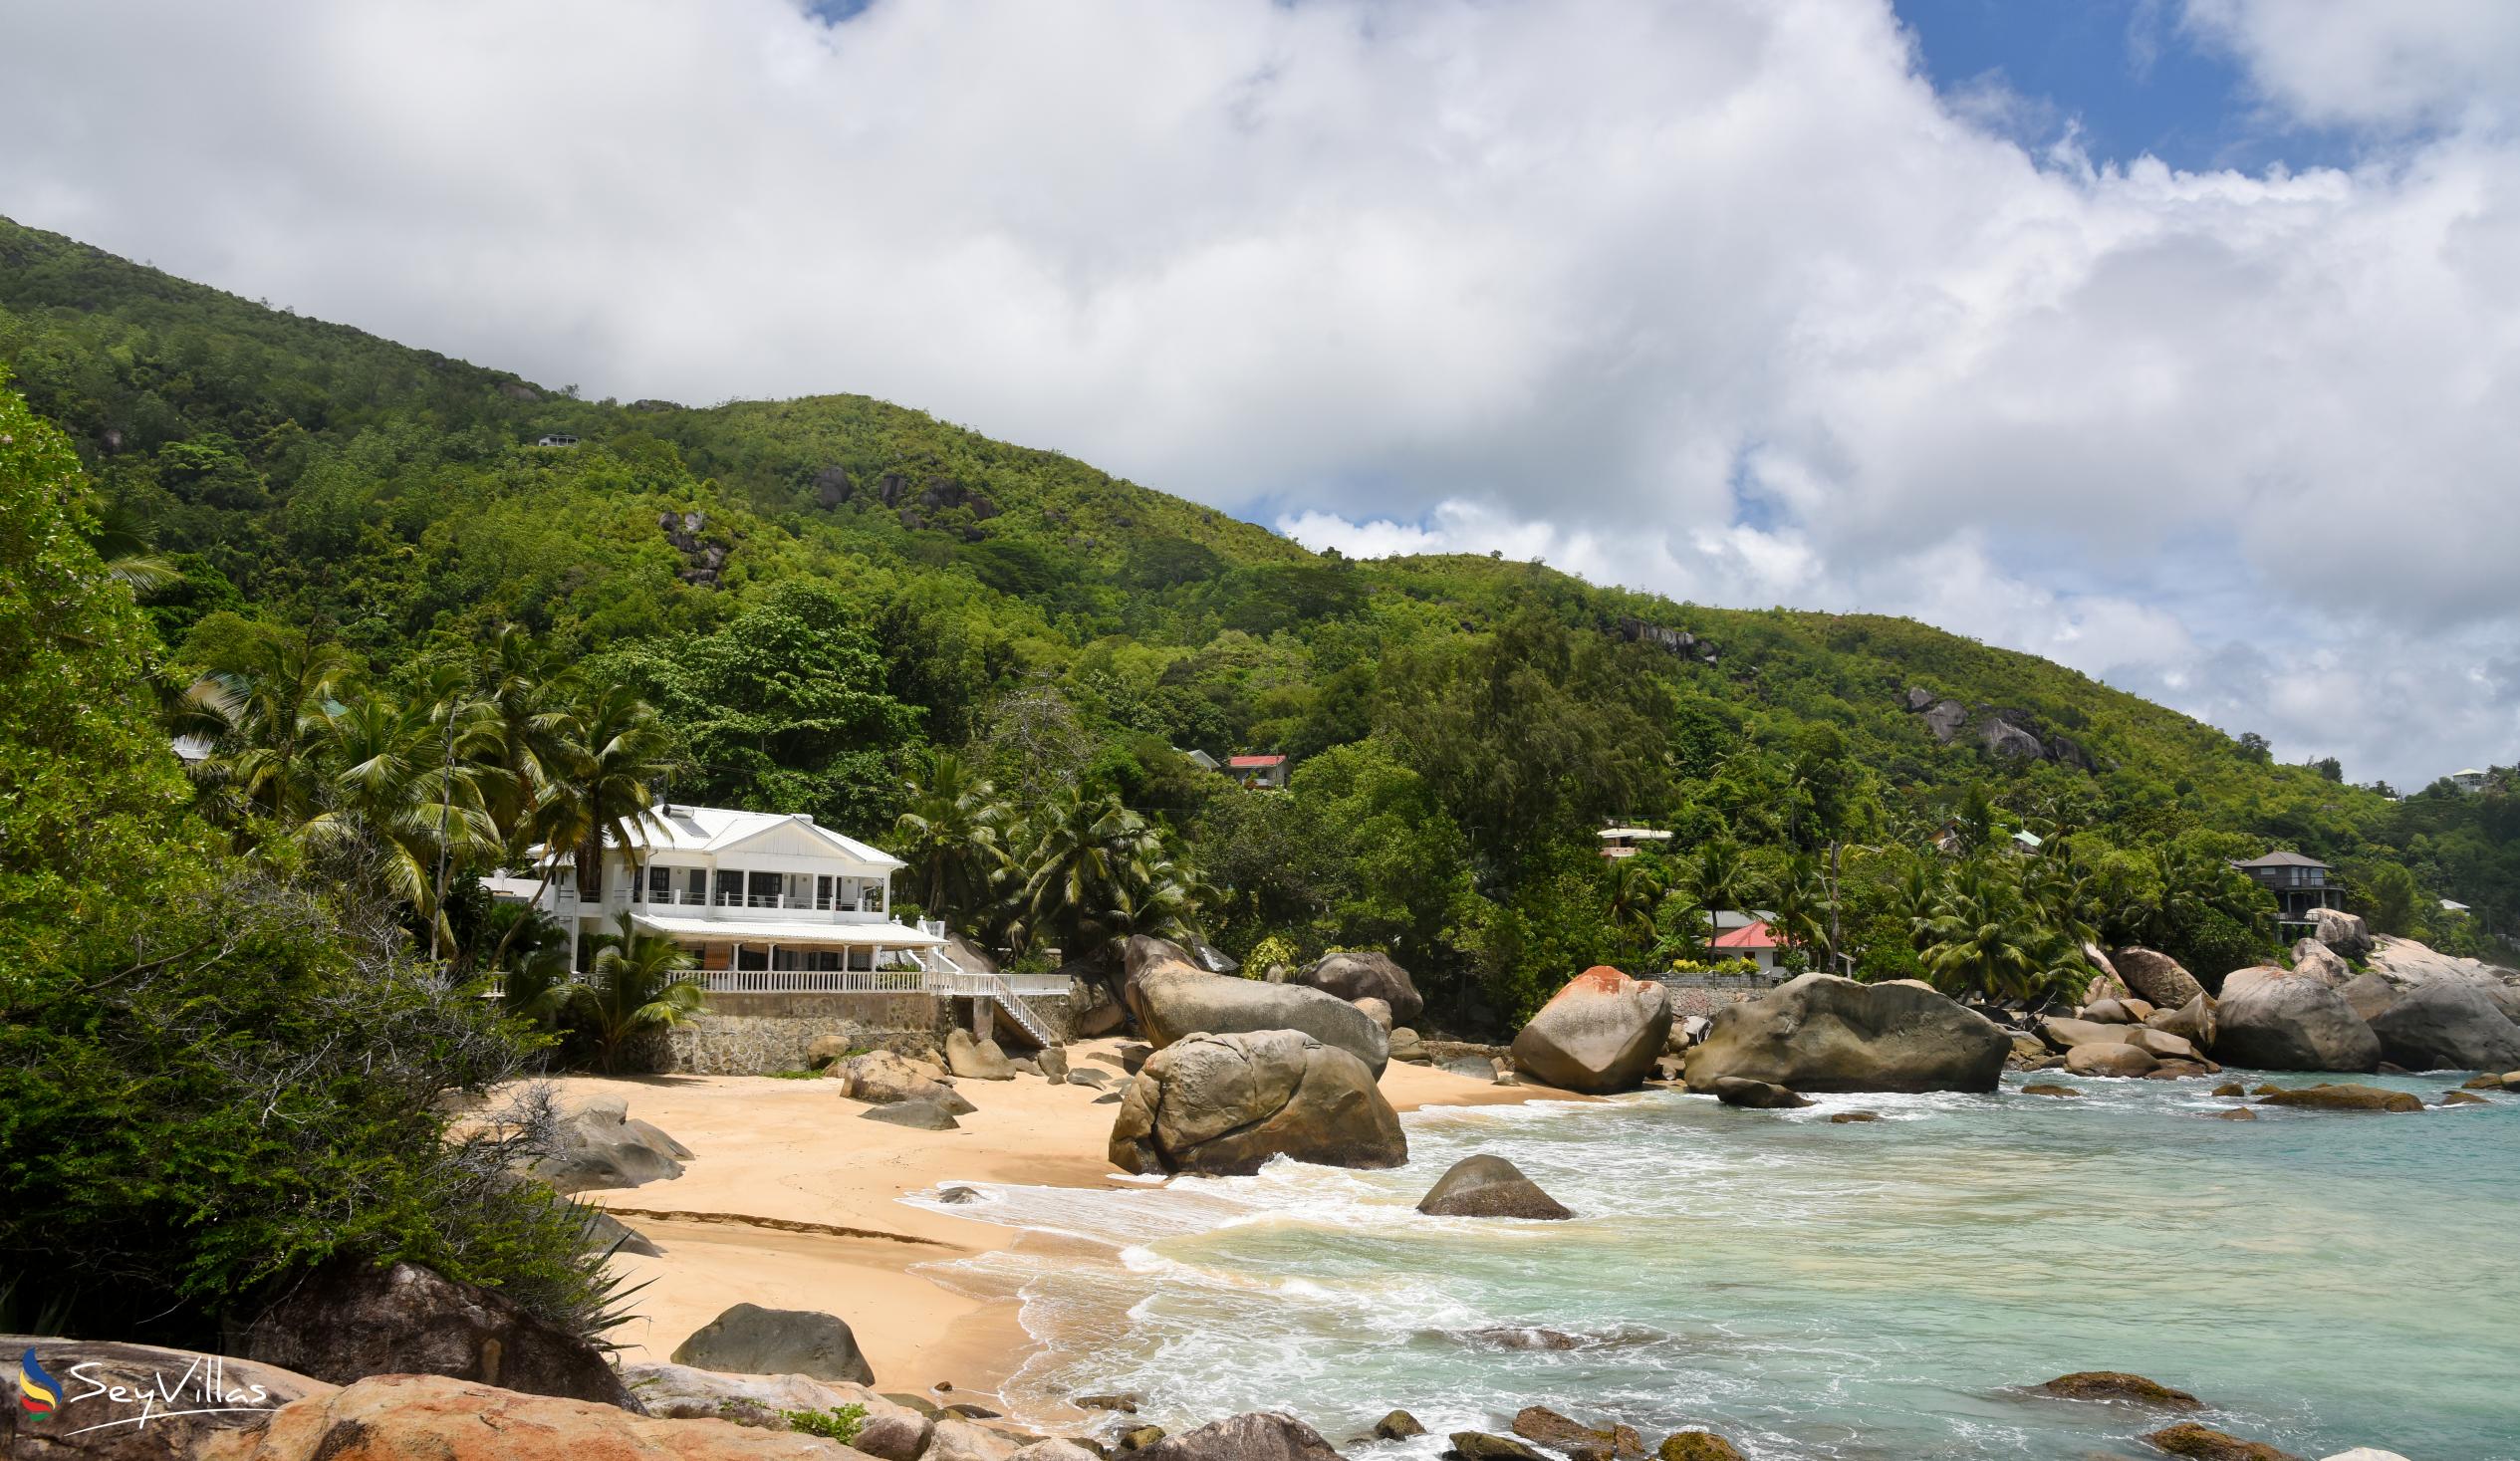 Photo 2: Anse Machabée - Mahé (Seychelles)